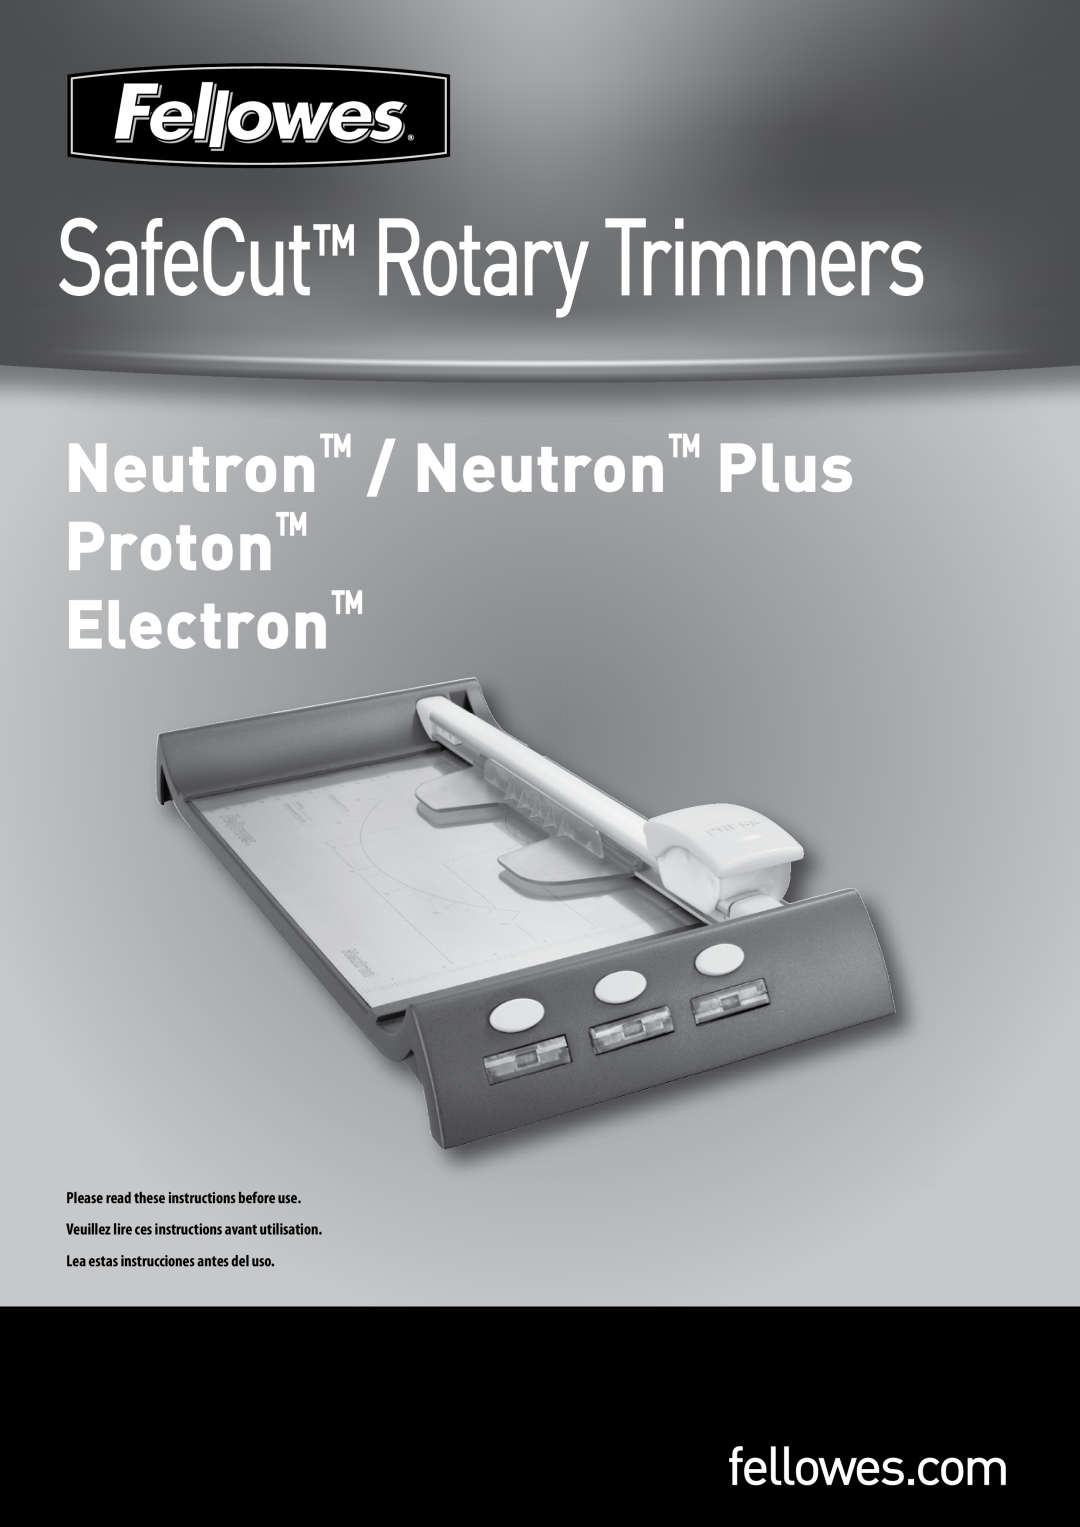 Fellowes Proton 120, Electron 120 manual SafeCut Rotary Trimmers, Neutron / Neutron Plus Proton Electron, fellowes.com 